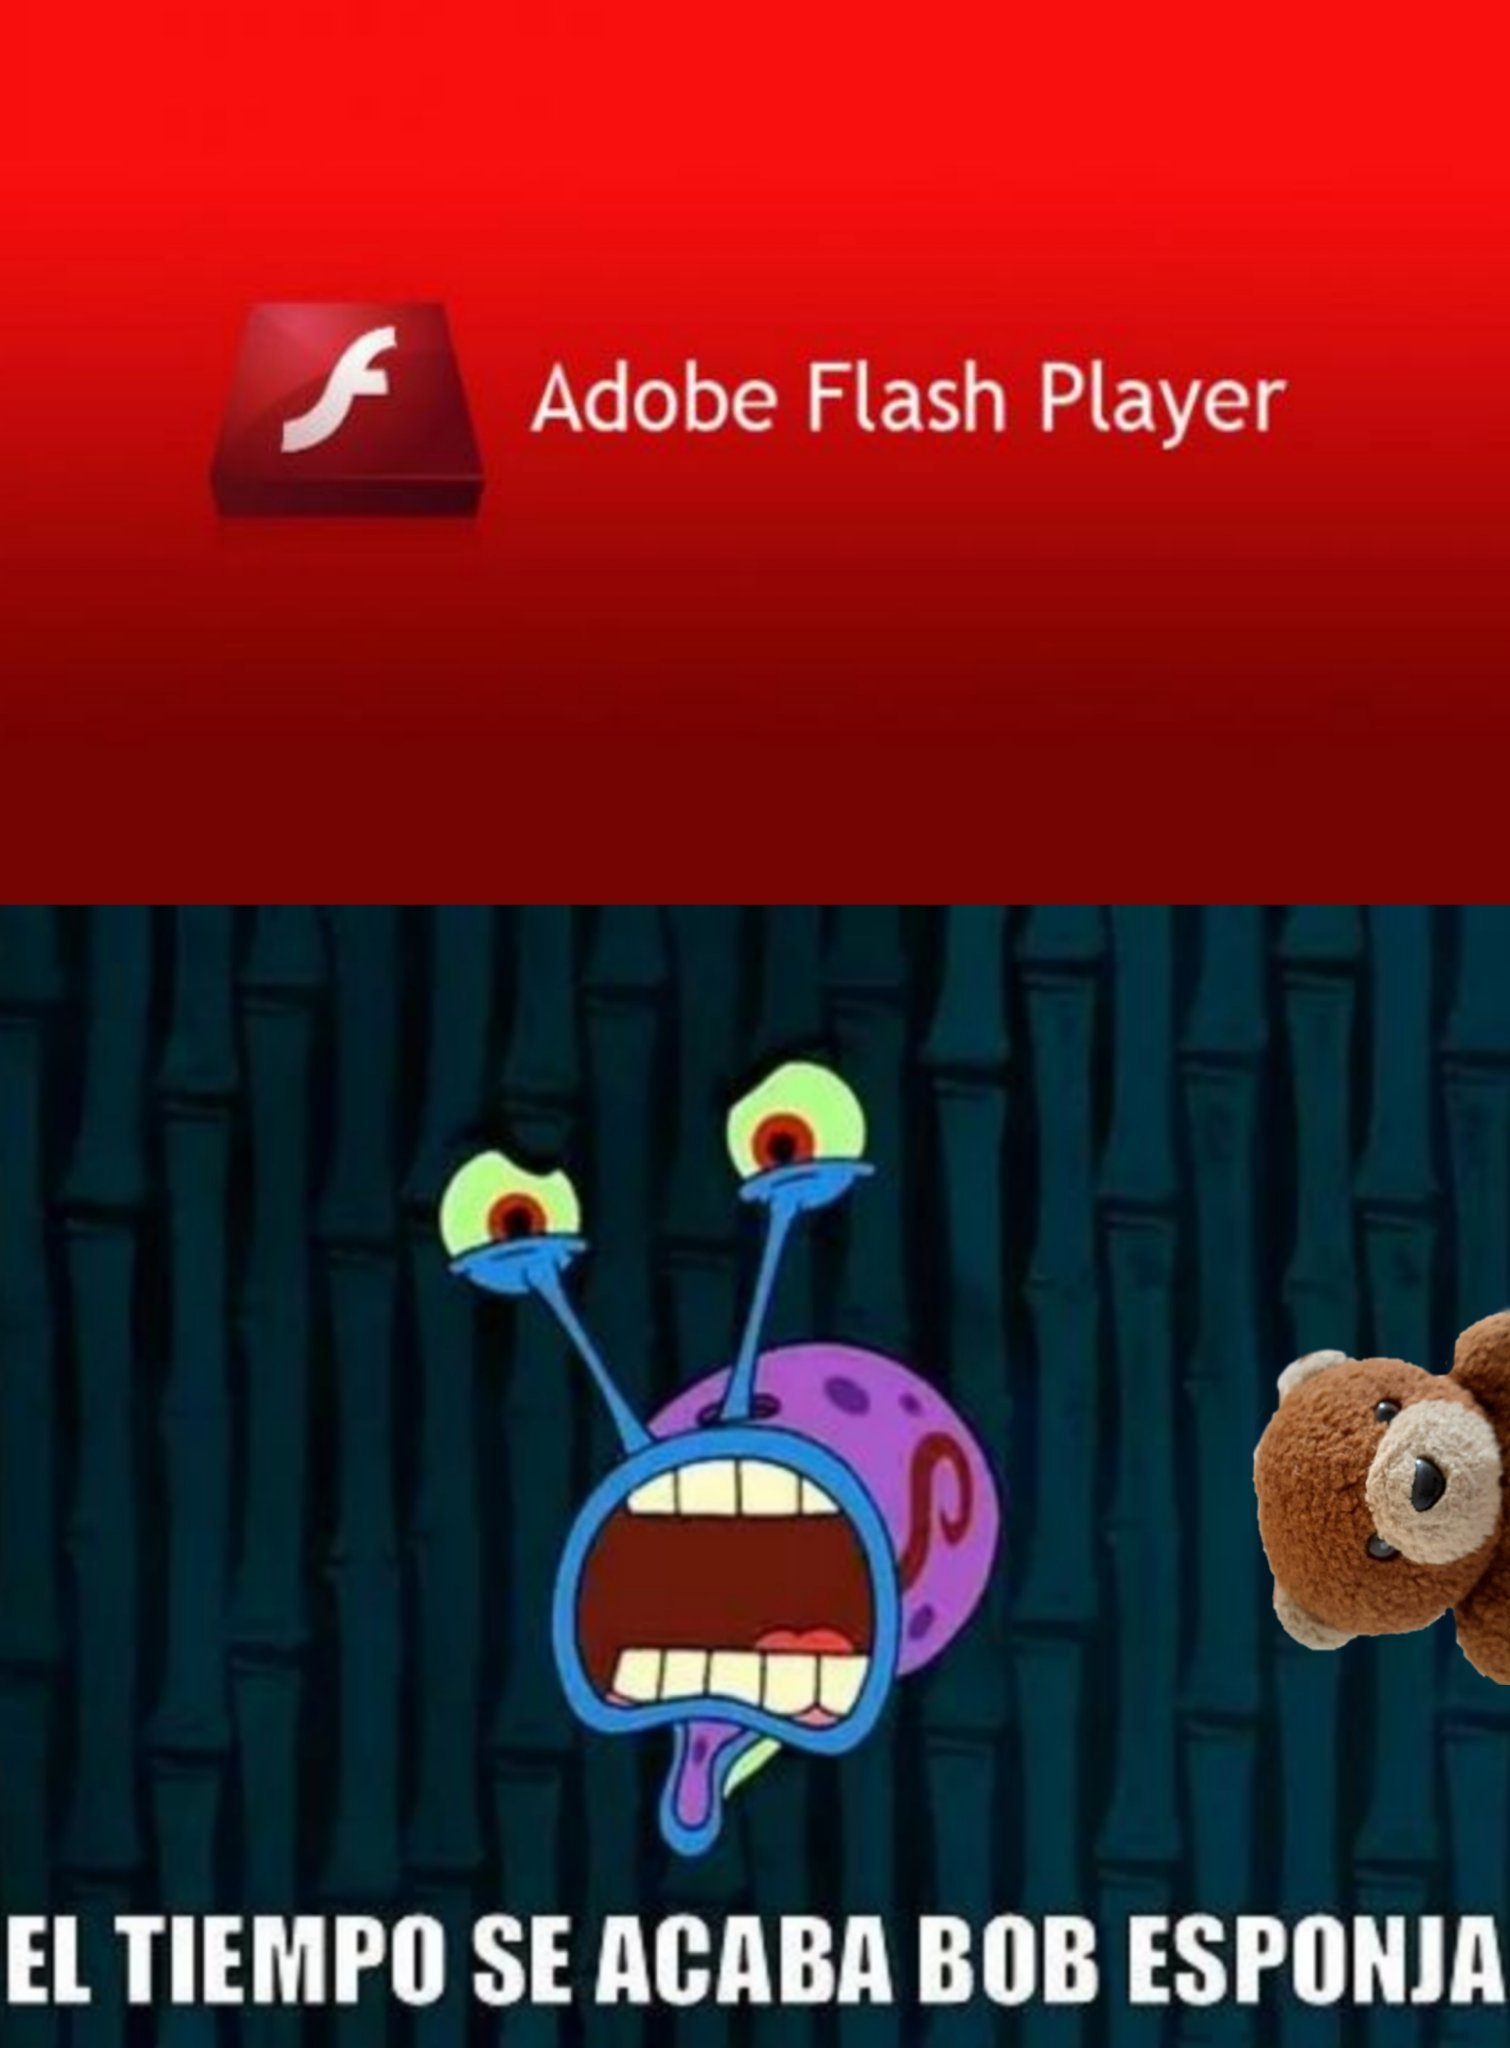 Recuerden que hoy es el ultimo día para jugar juegos que ocupan flash - meme